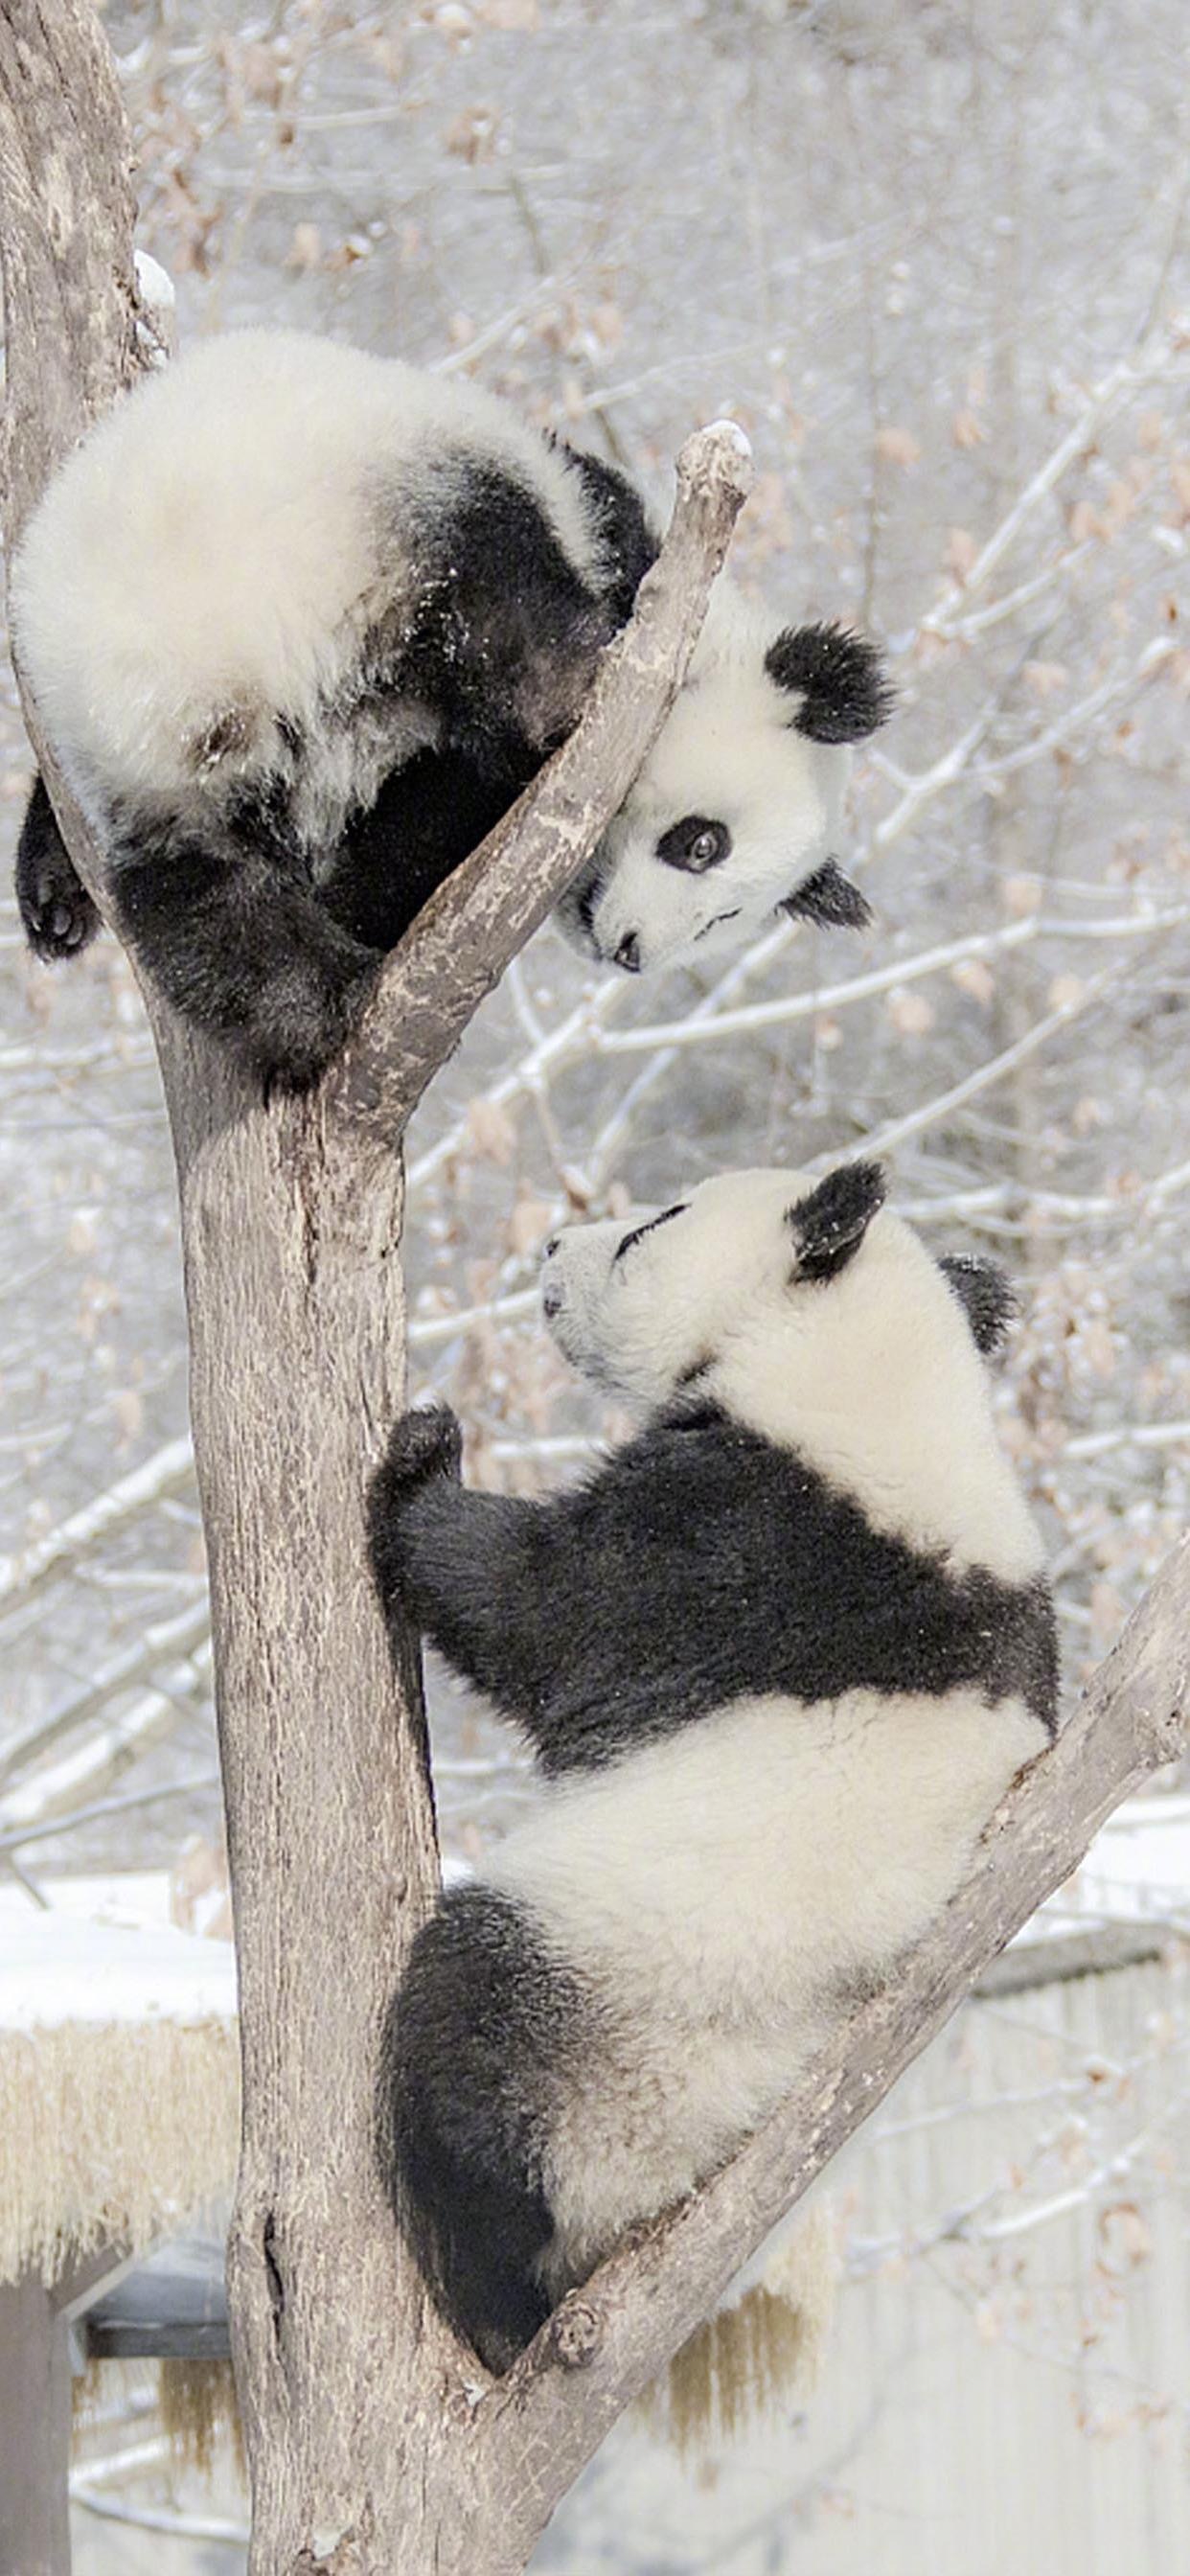 大熊猫雪地嬉戏手机壁纸